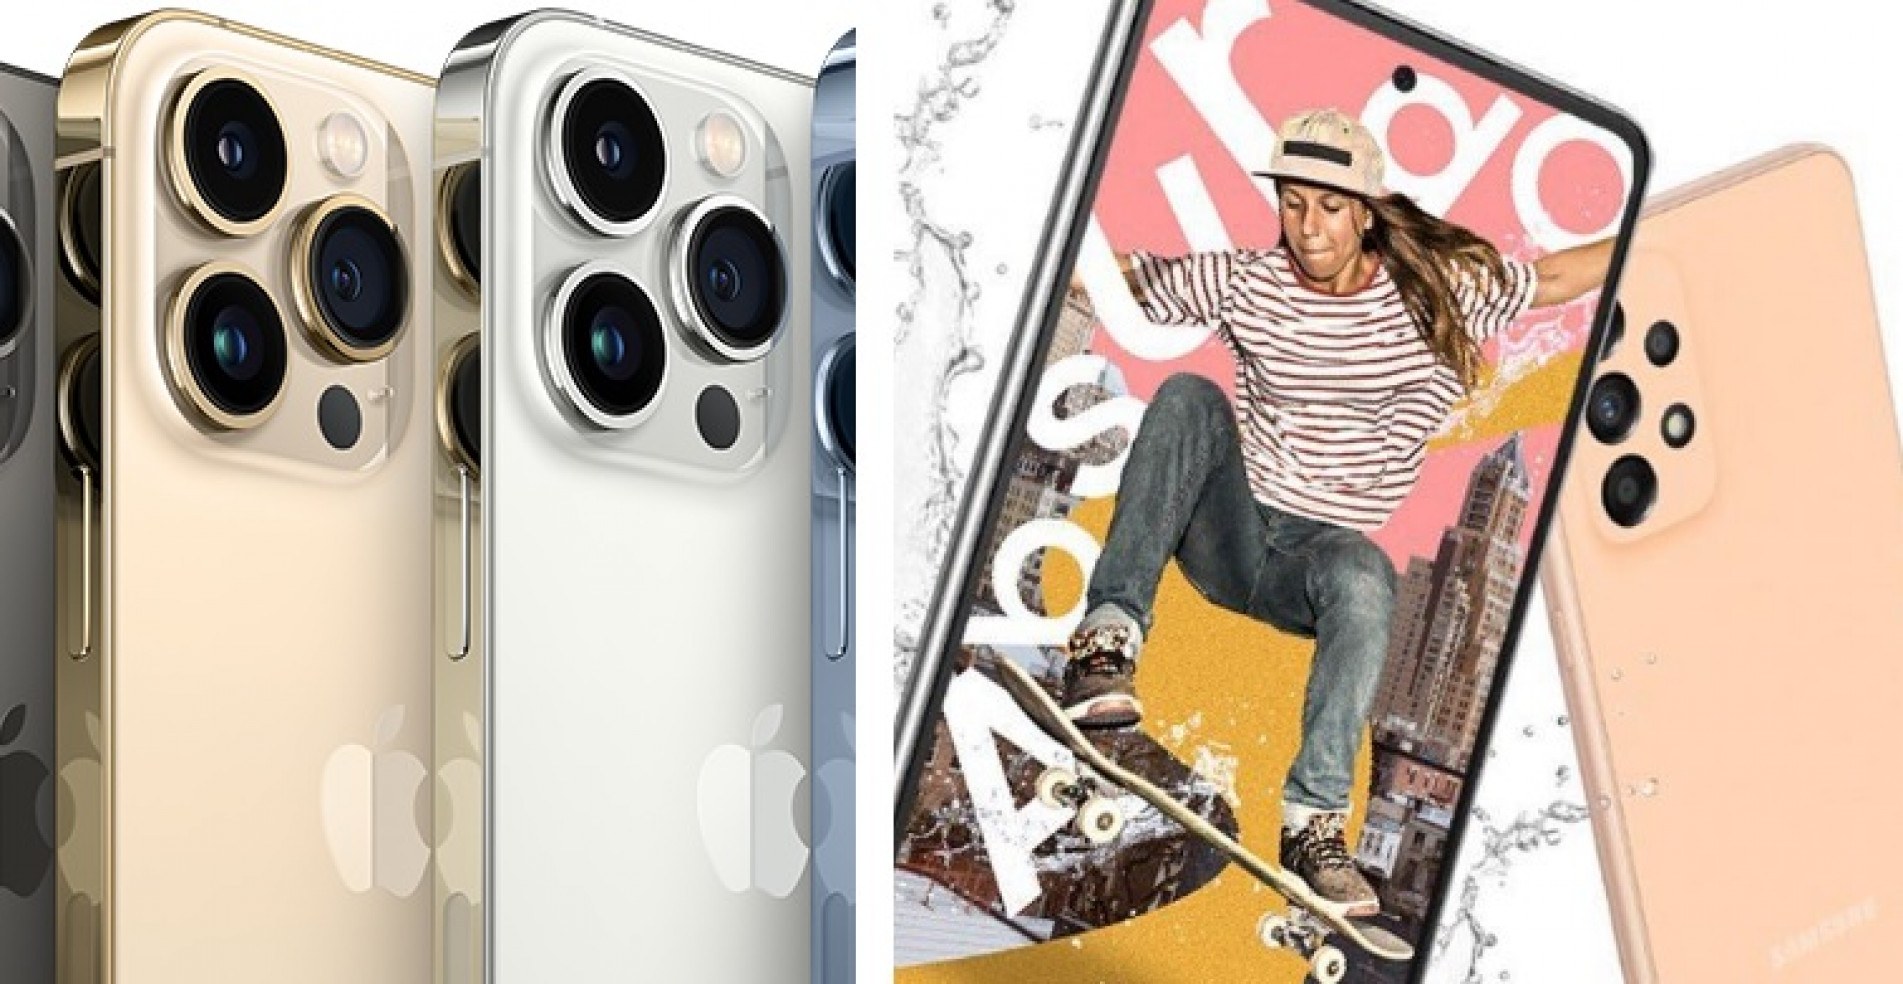 À esquerda, celular da marca Apple e à direita, da marca Samsung 